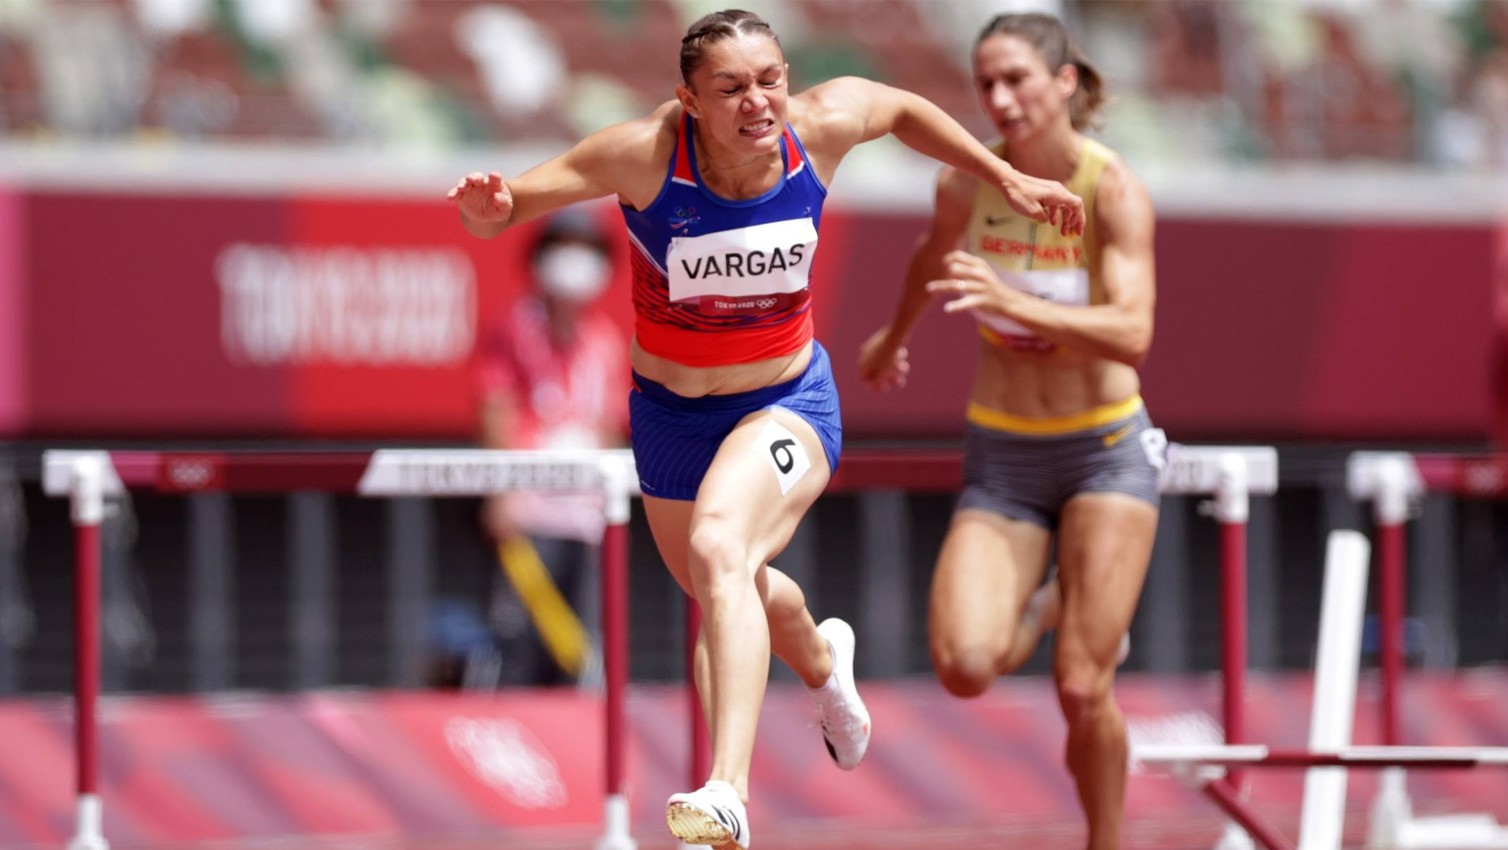 Andrea Vargas rompe récord nacional de 60 metros vallas como preparación para el mundial en Serbia